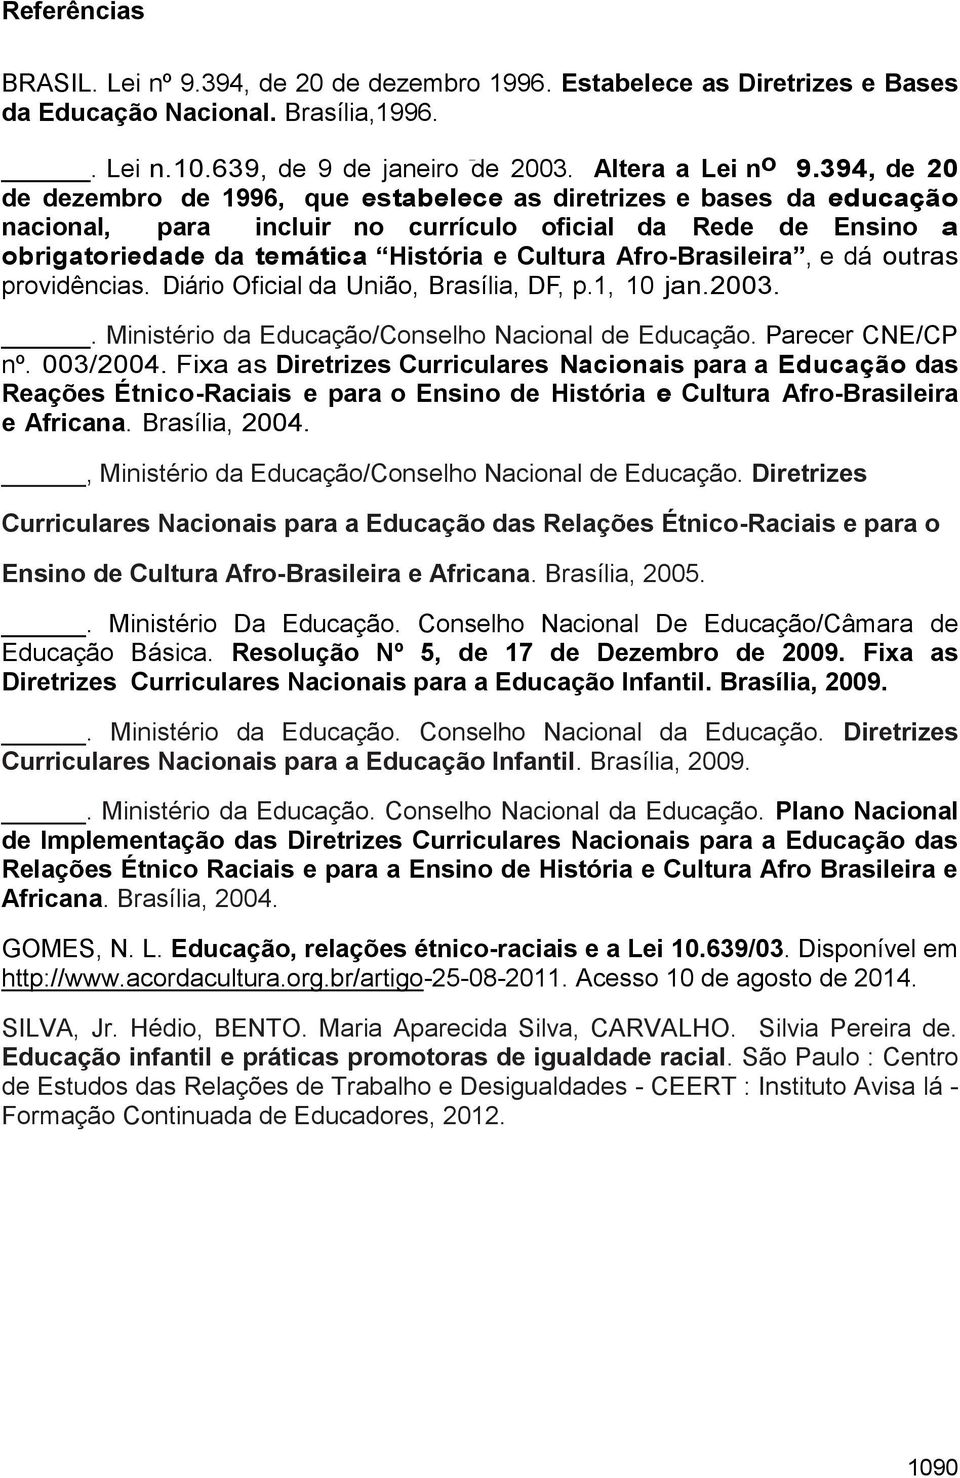 Afro-Brasileira, e dá outras providências. Diário Oficial da União, Brasília, DF, p.1, 10 jan.2003.. Ministério da Educação/Conselho Nacional de Educação. Parecer CNE/CP nº. 003/2004.